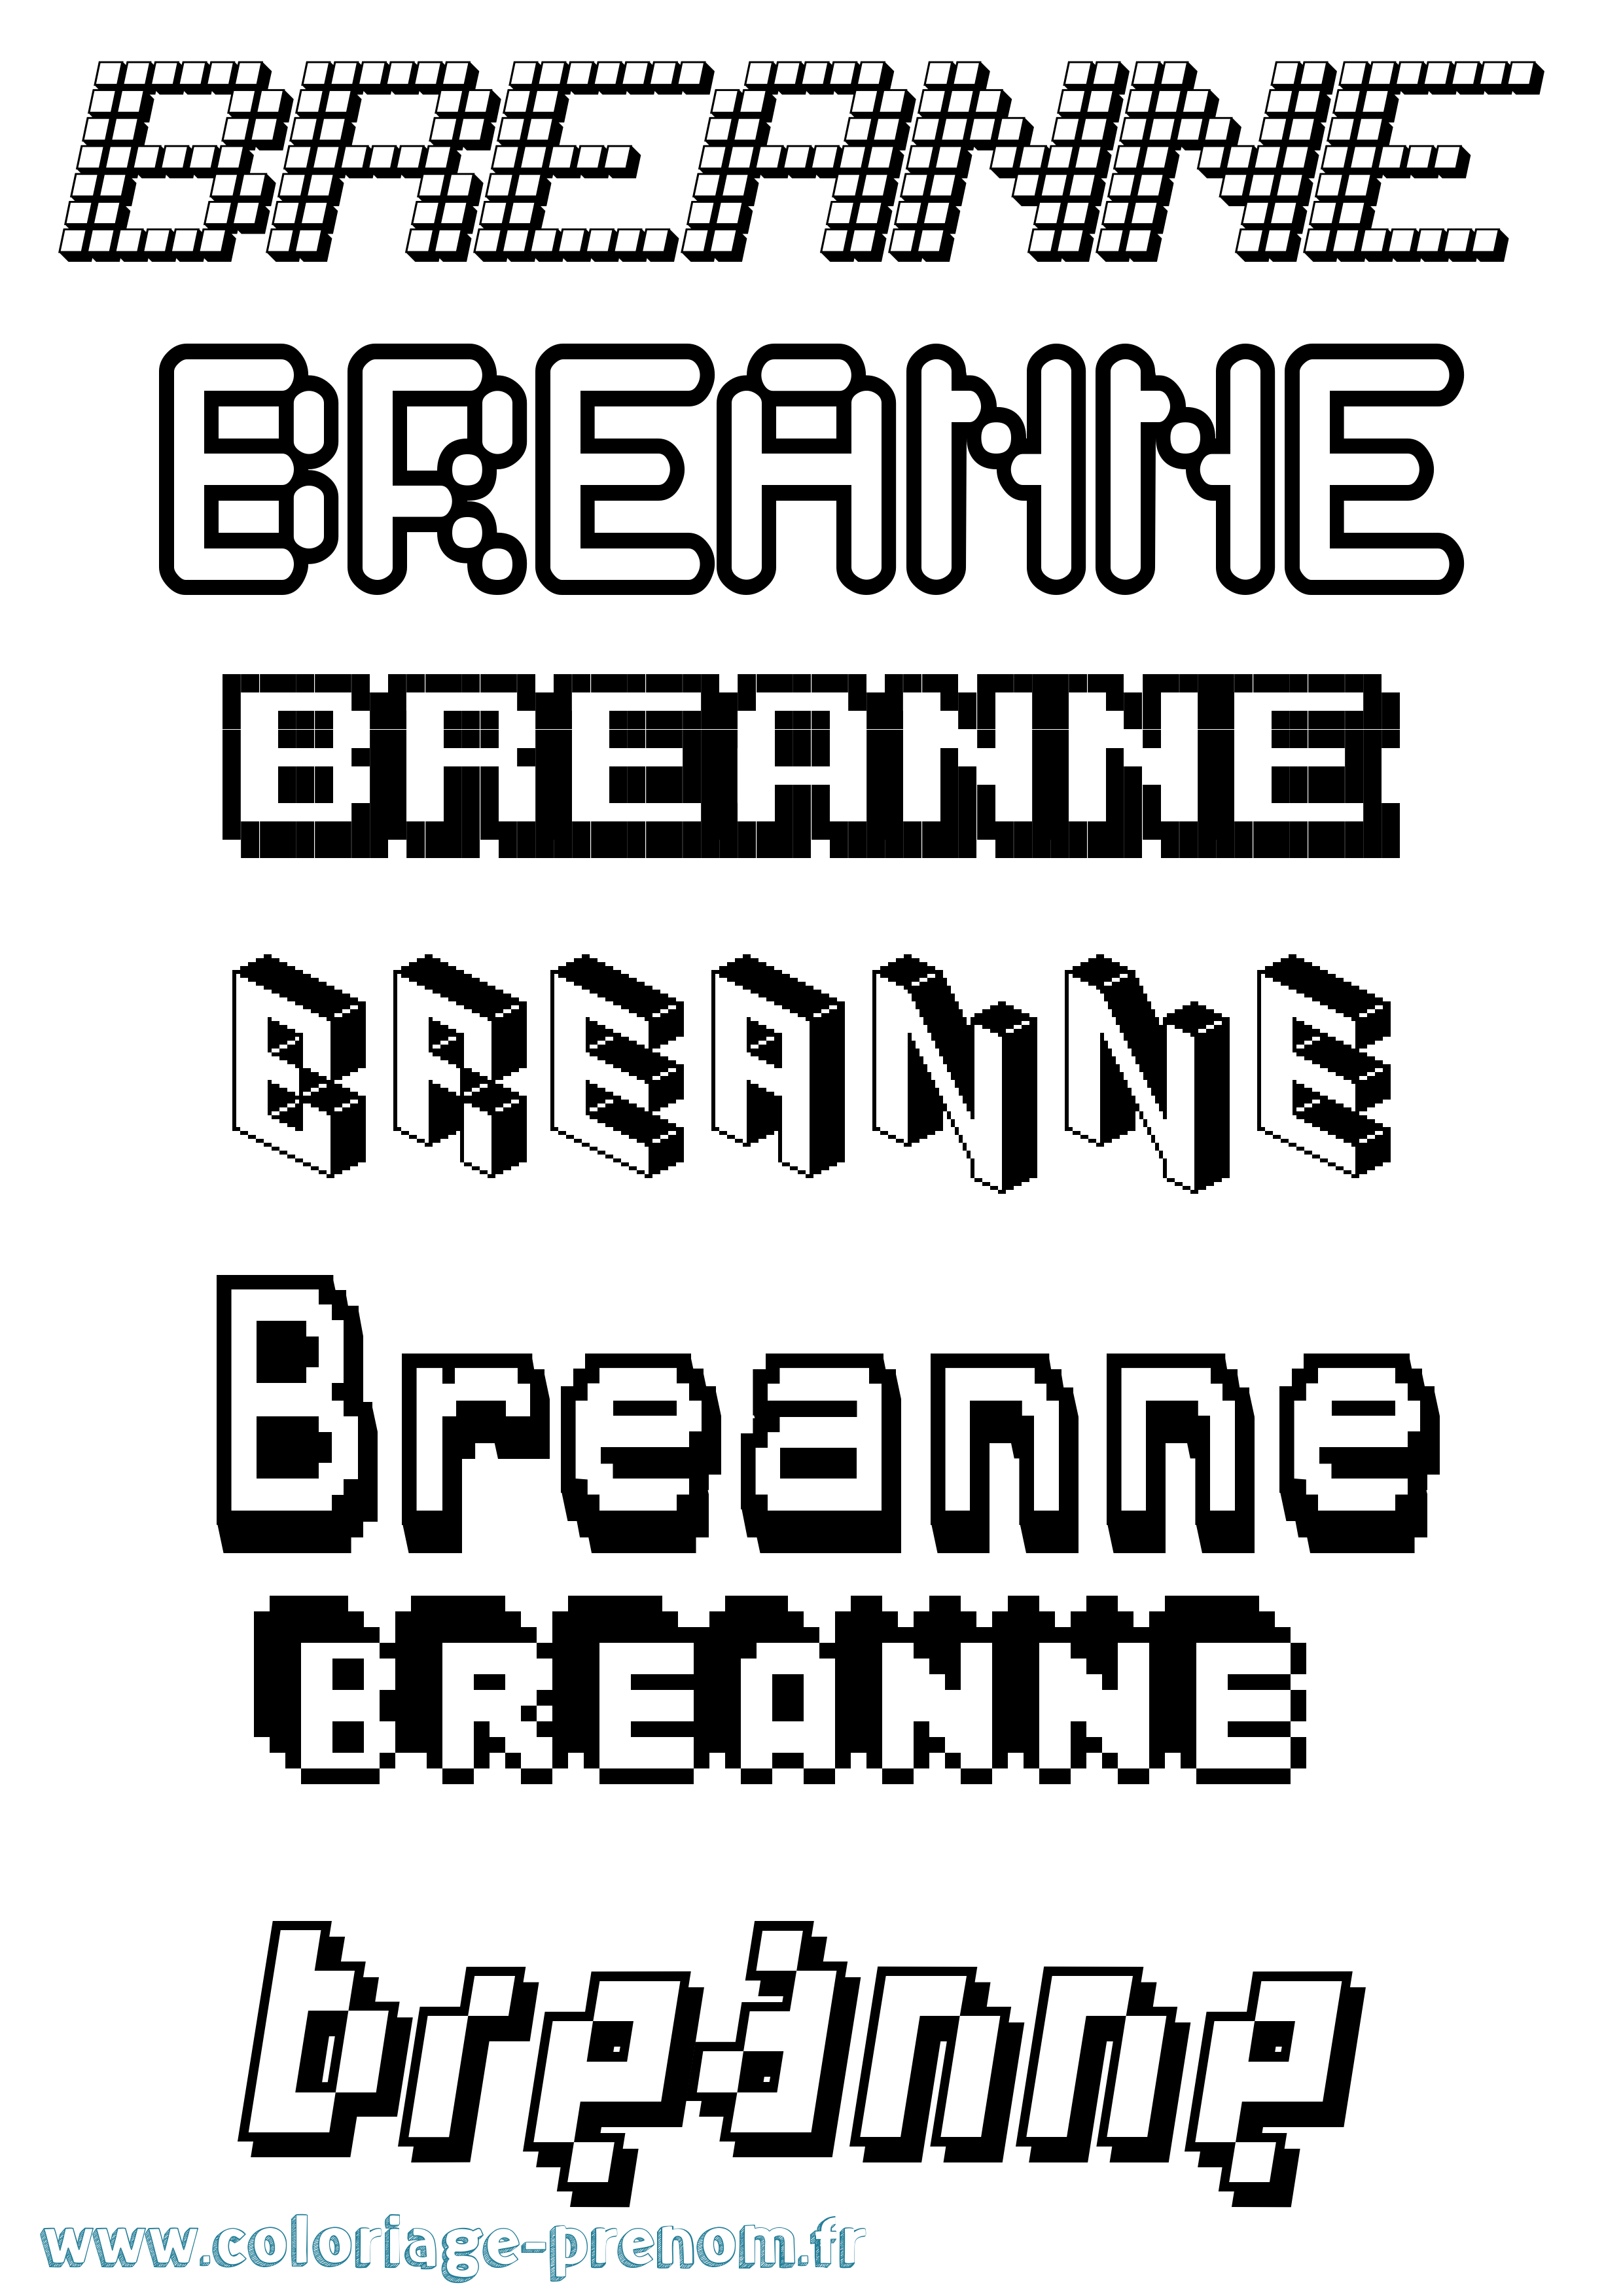 Coloriage prénom Breanne Pixel